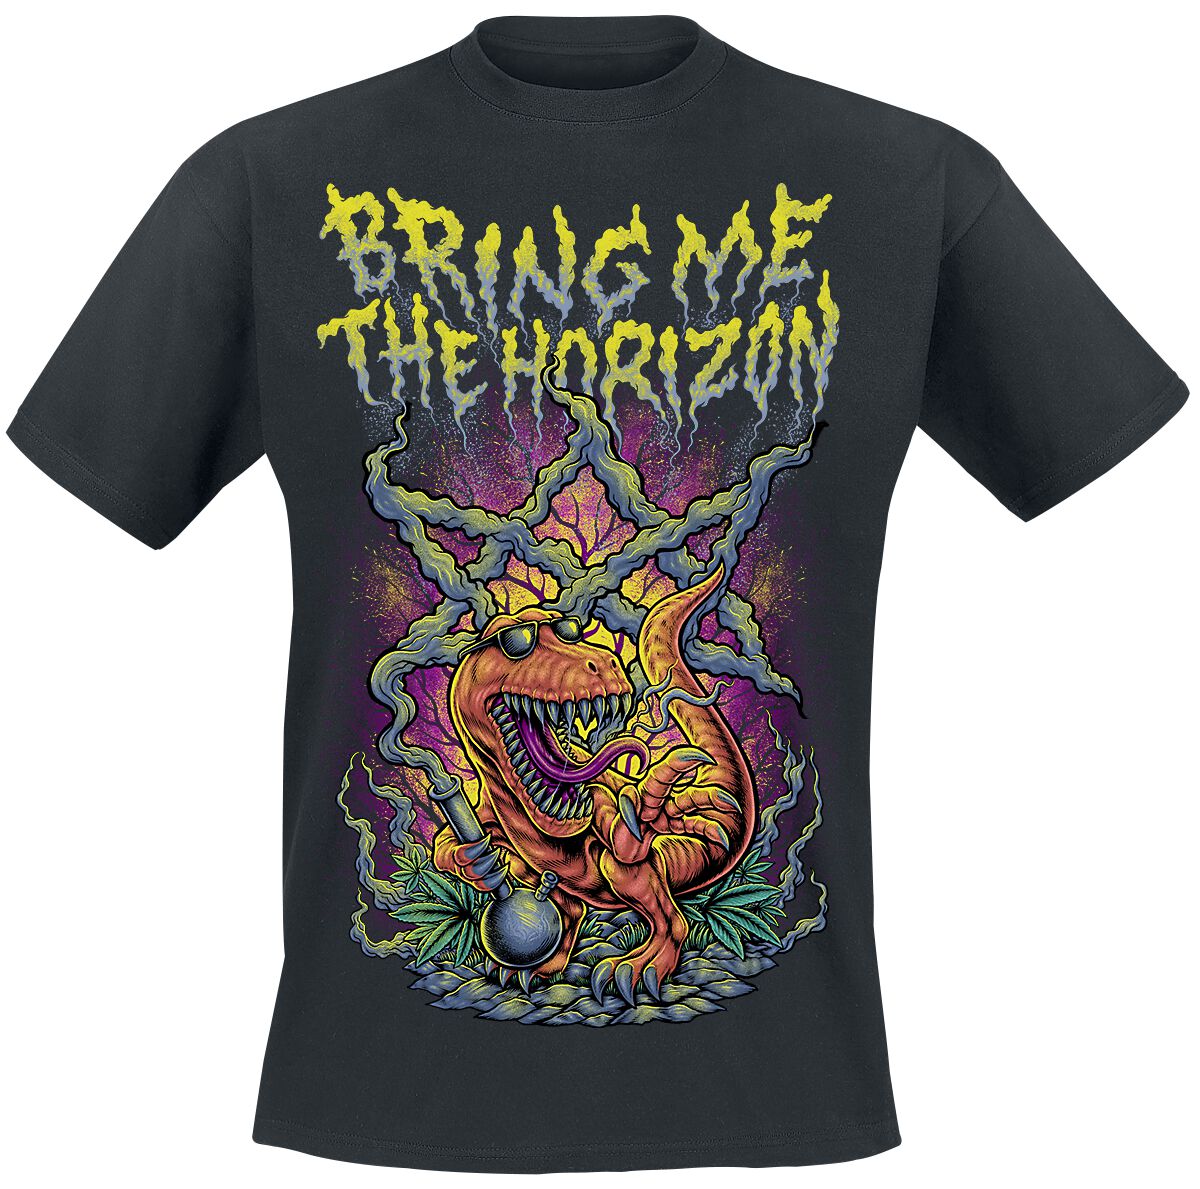 Bring Me The Horizon T-Shirt - Smoking Dinosaur - S bis XXL - für Männer - Größe S - schwarz  - Lizenziertes Merchandise!